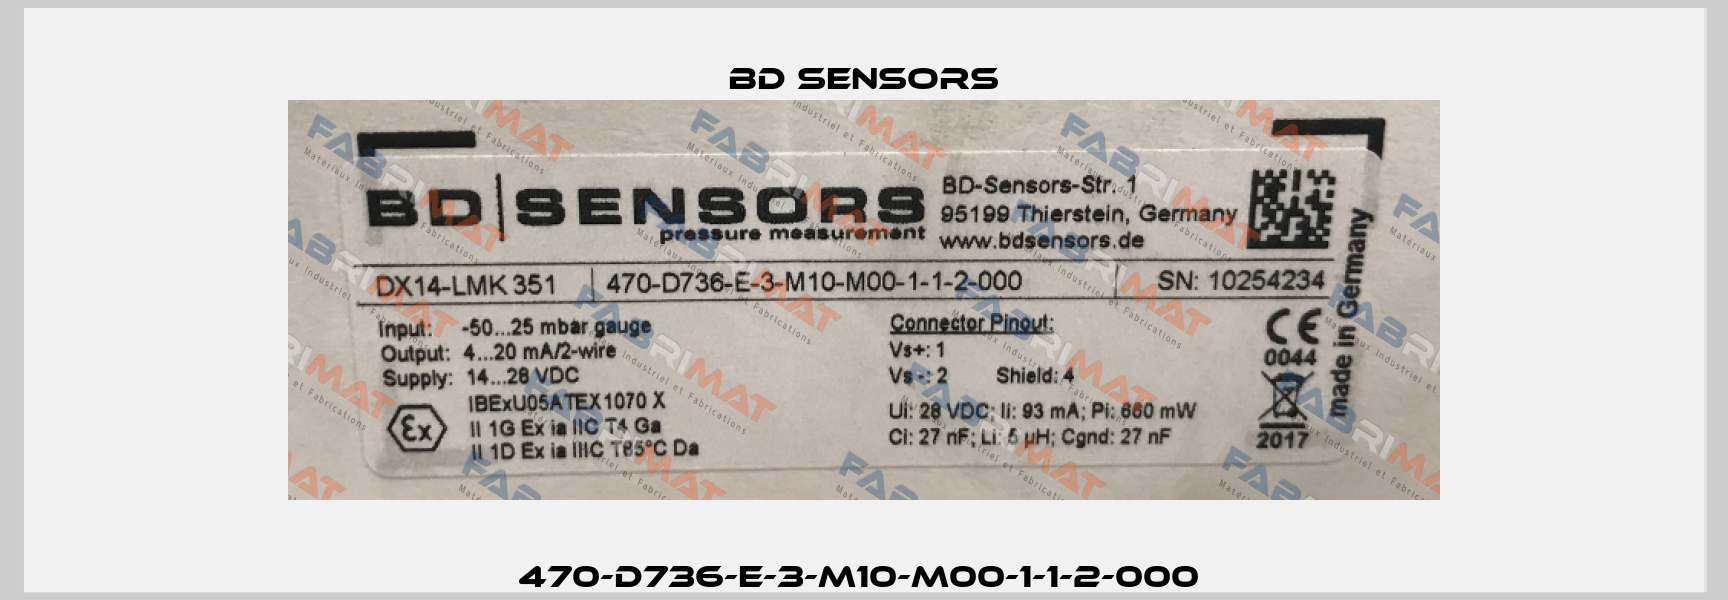 470-D736-E-3-M10-M00-1-1-2-000  Bd Sensors